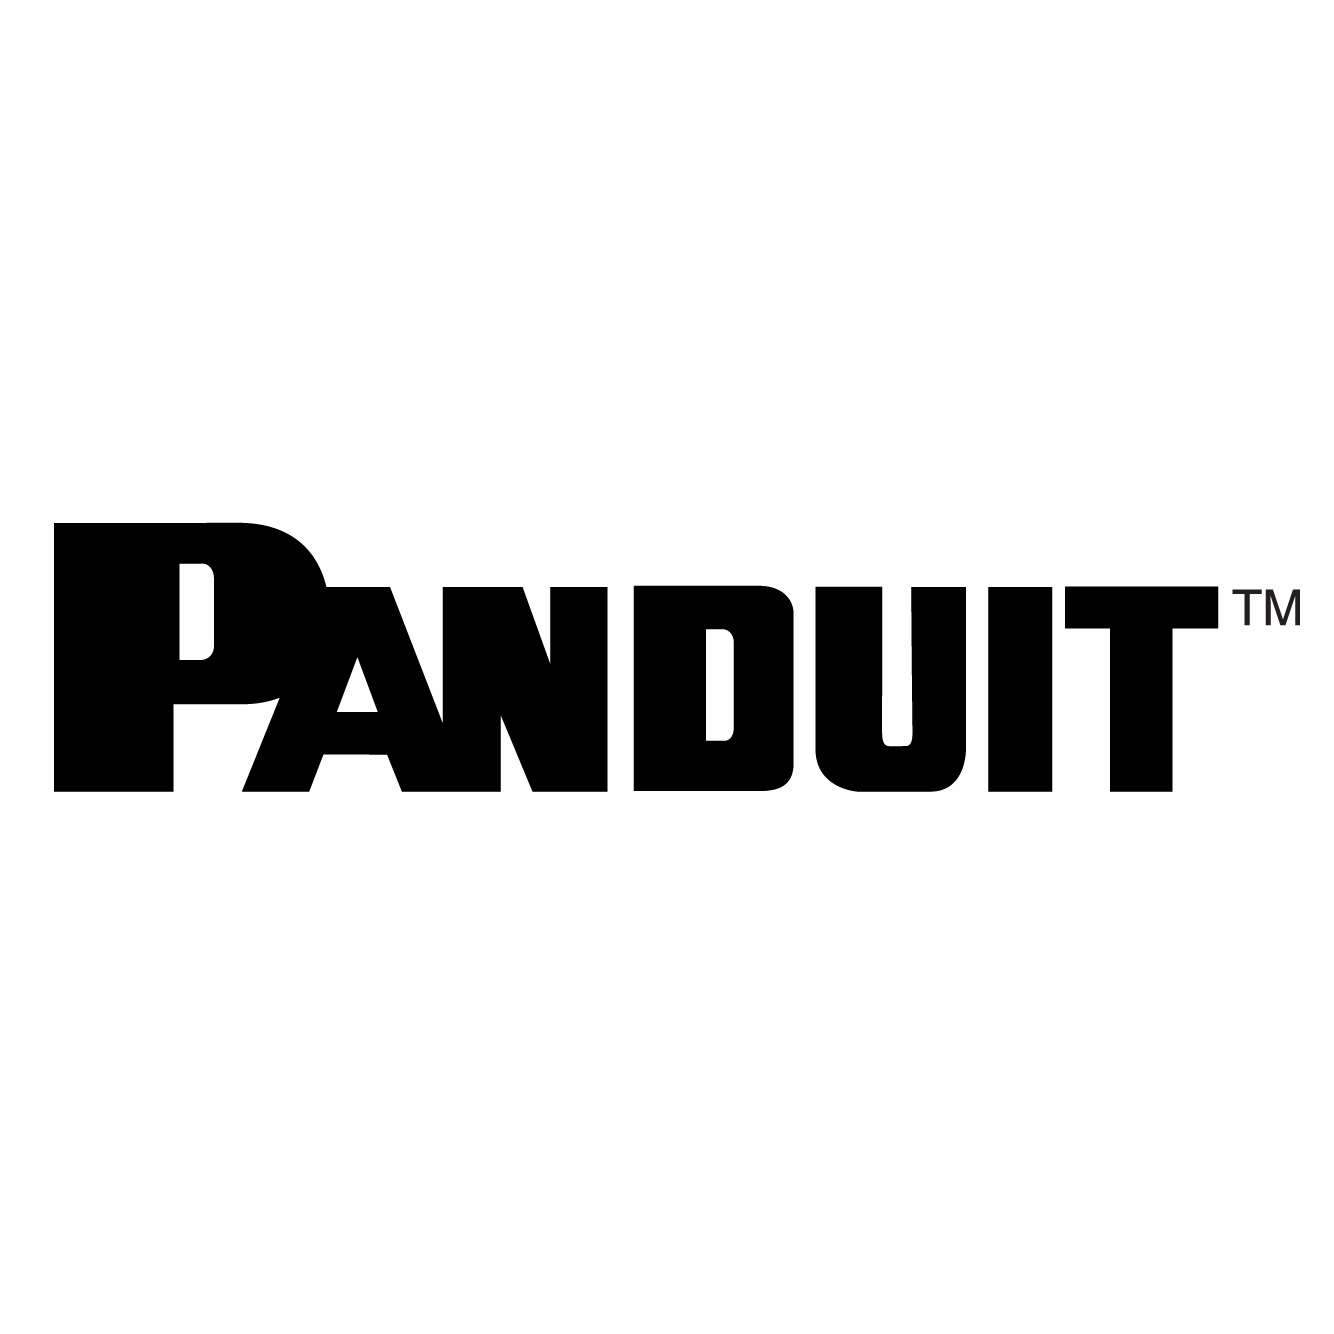 https://securetech.local/wp-content/uploads/2019/02/13.PANDUIT.png